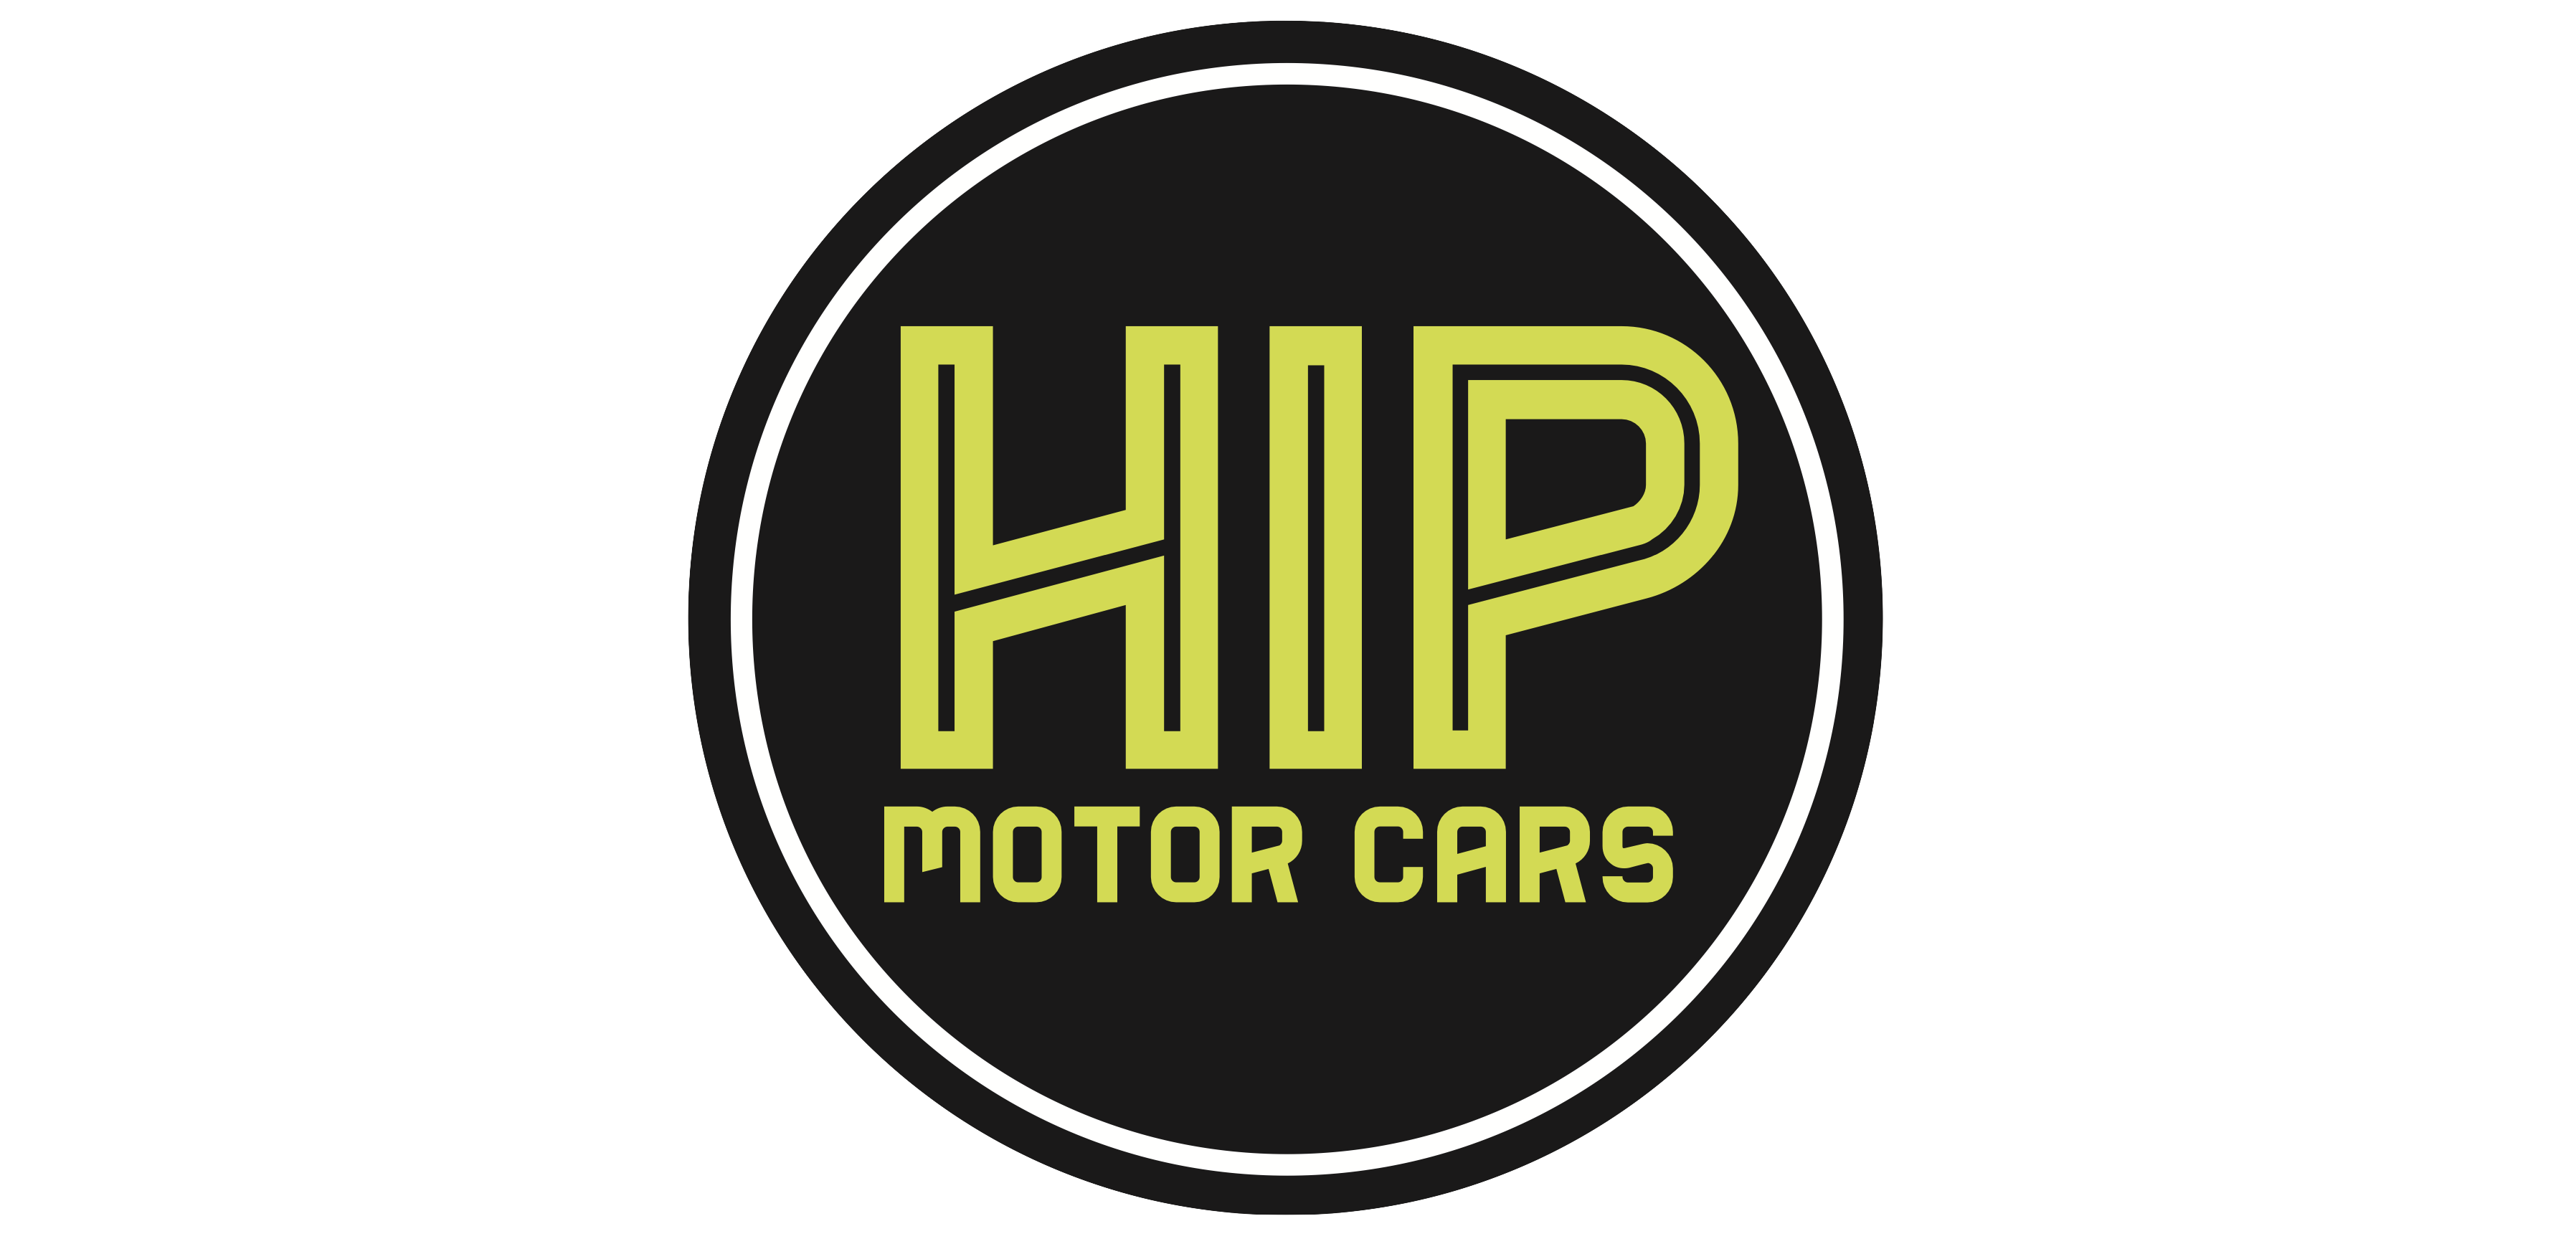 Hip Motor Cars